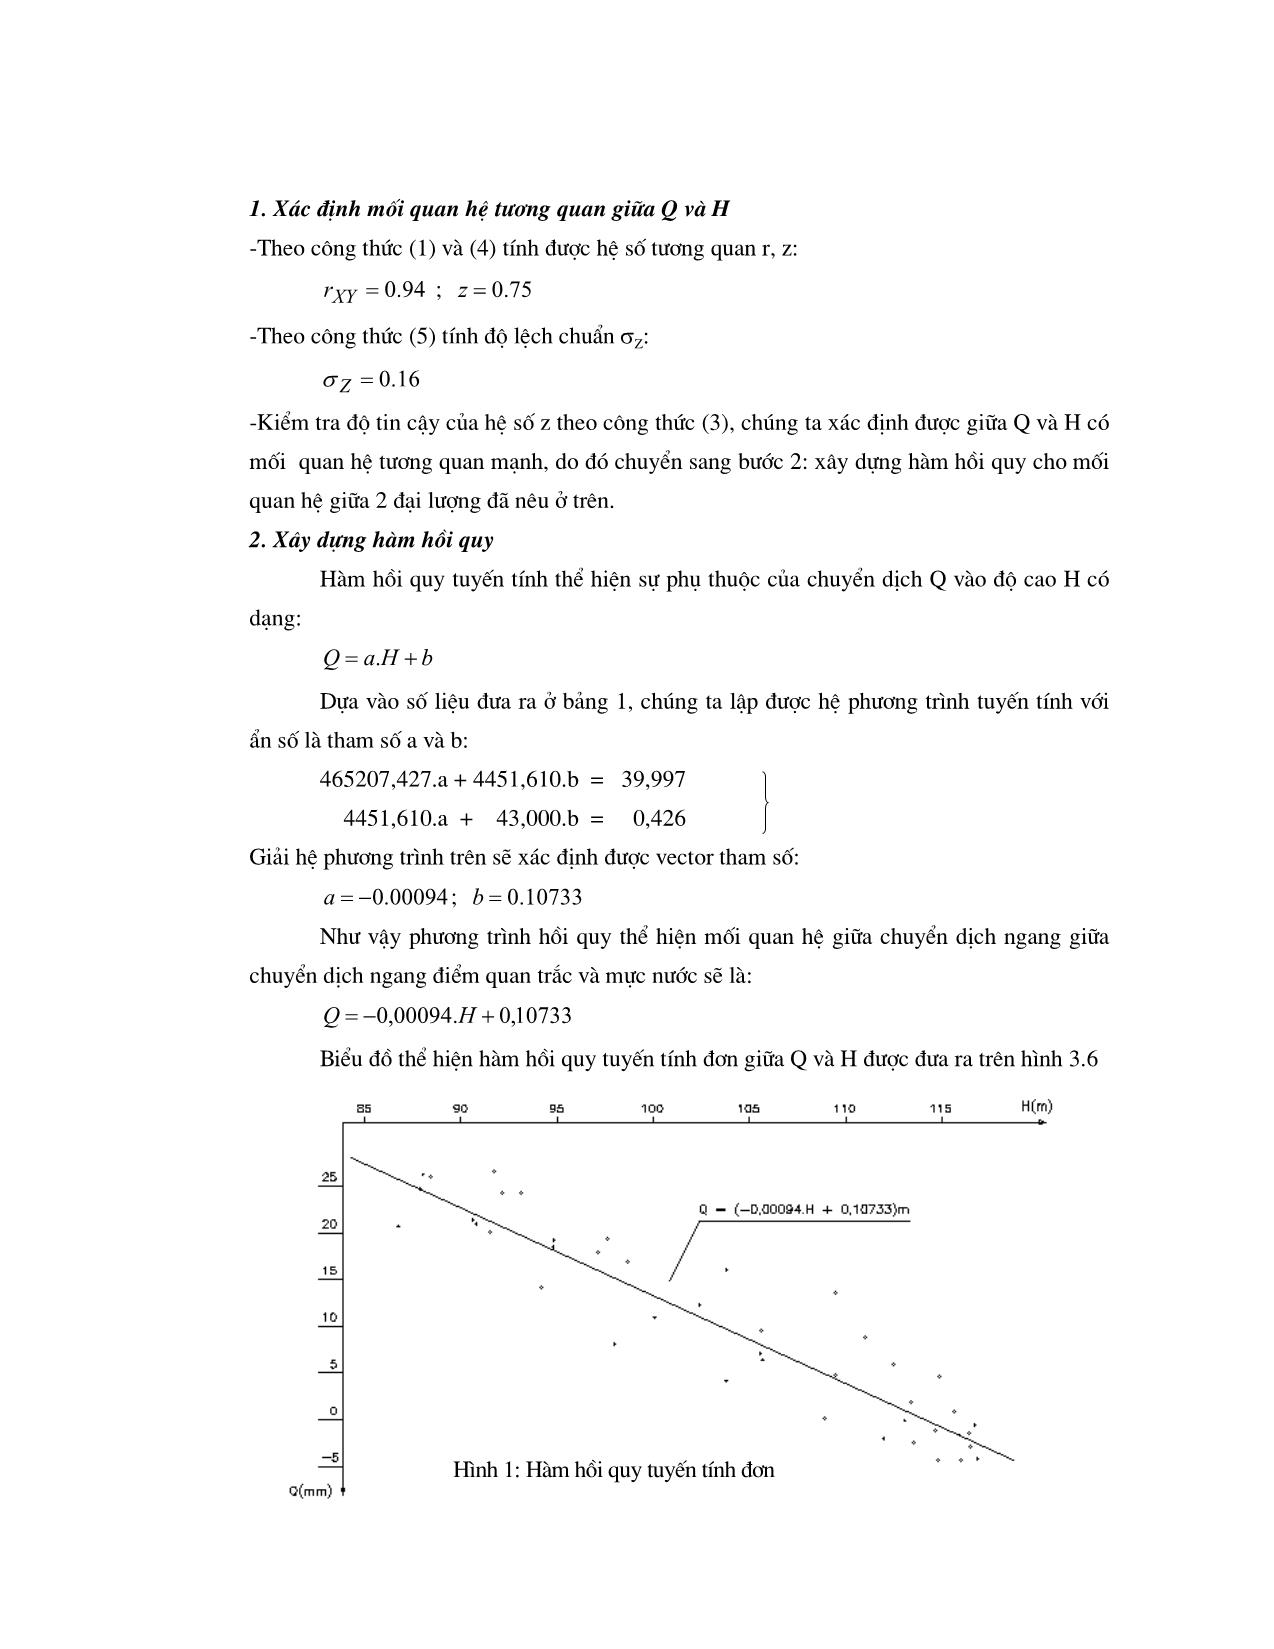 Đánh giá chuyển dịch công trình theo phương pháp phân tích thống kê trang 5